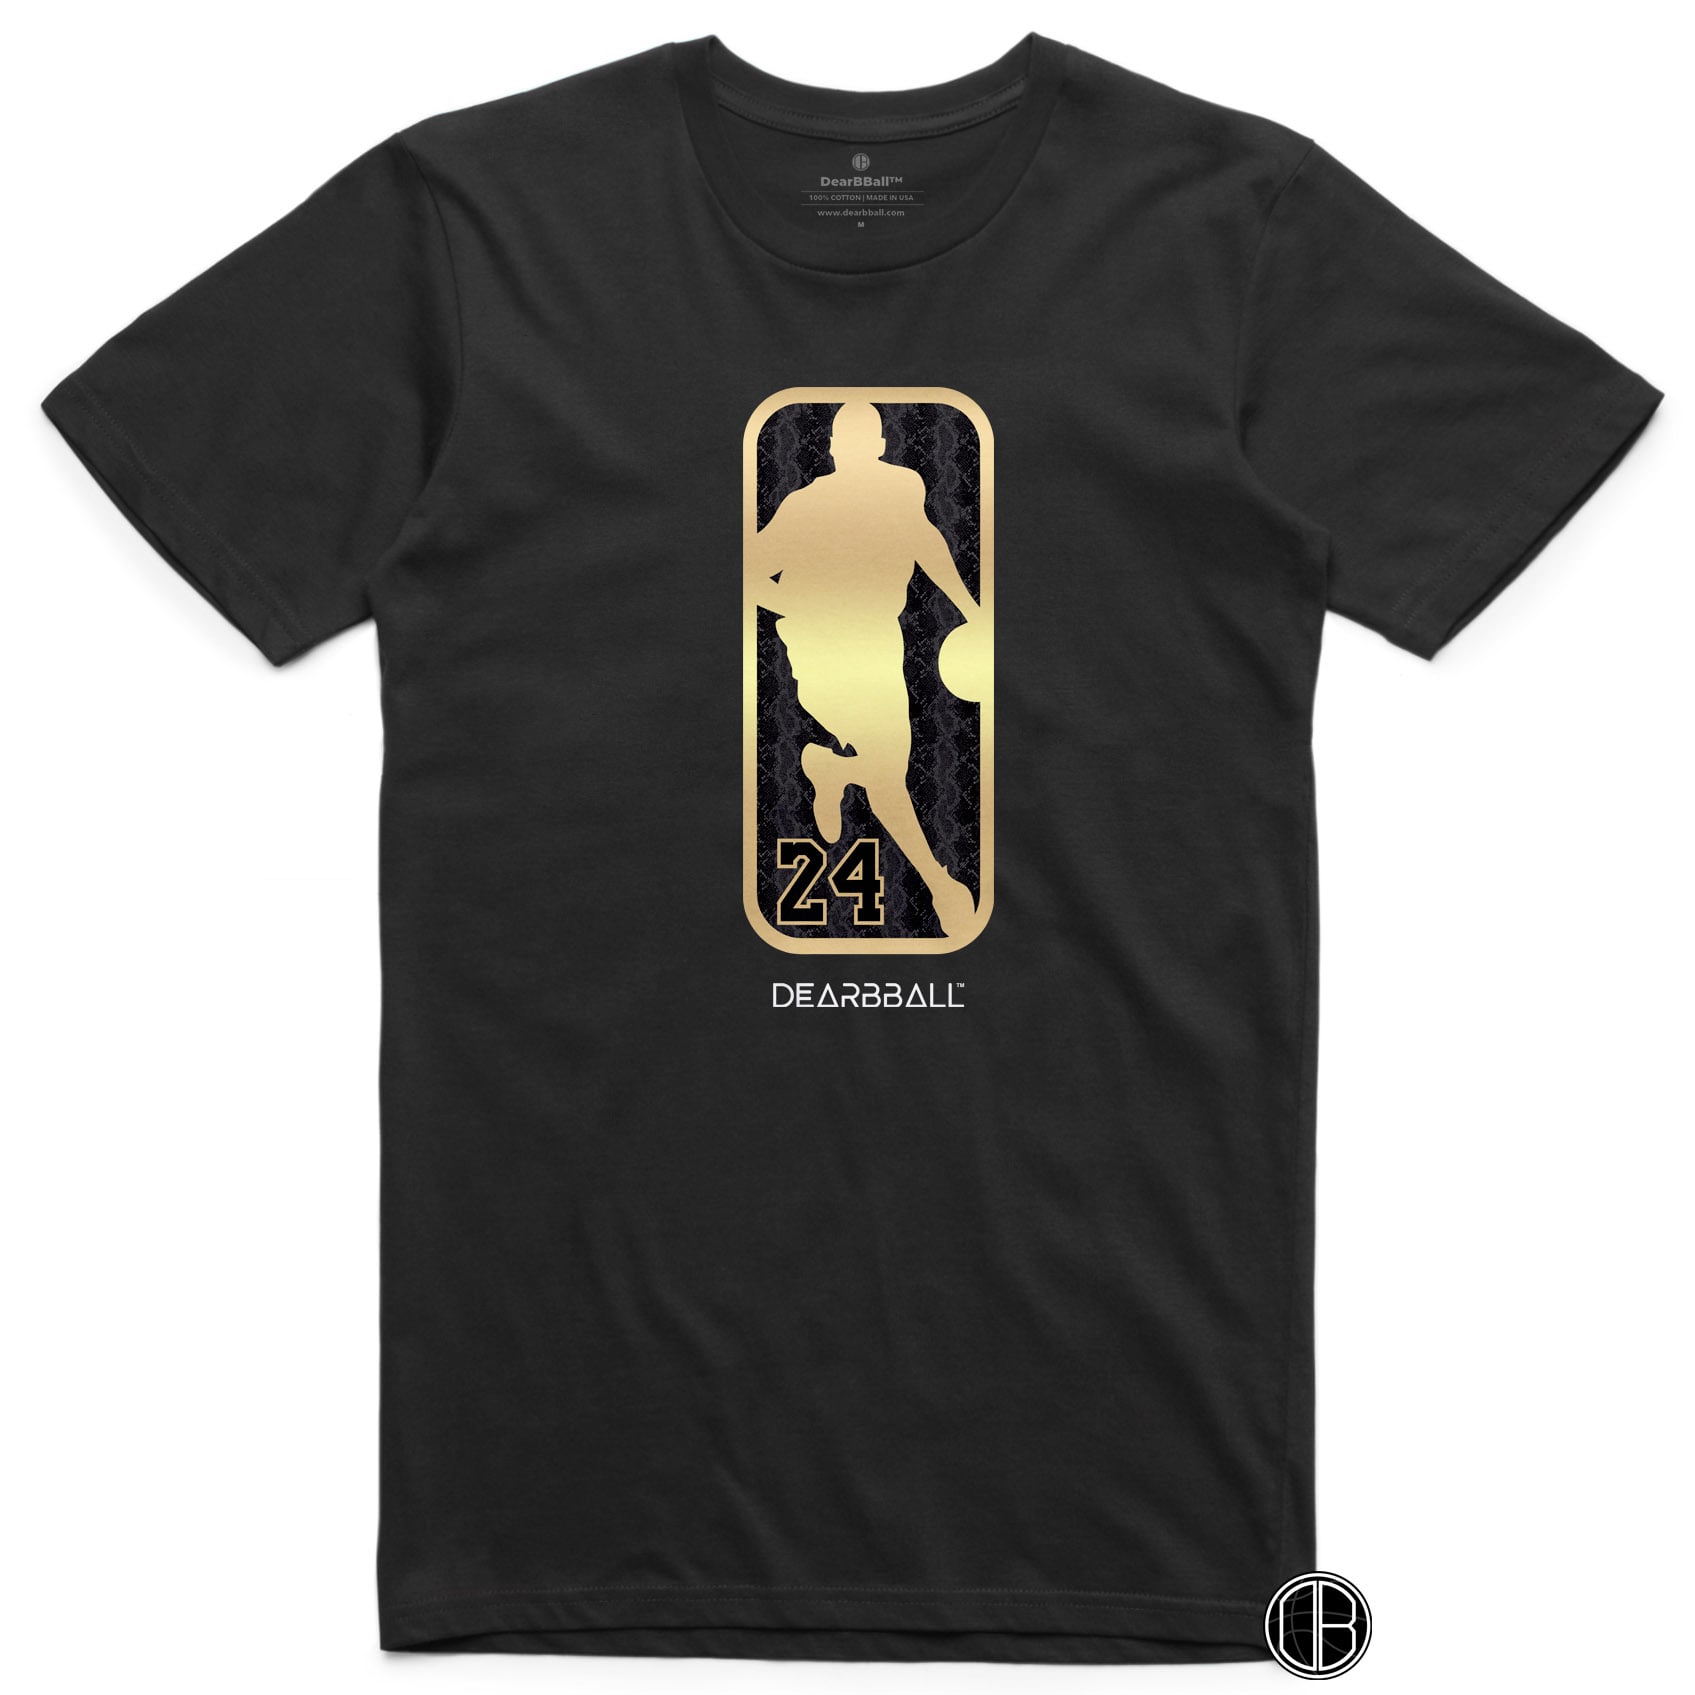 DearBBall T-Shirt - Mamba Logo Gold 24 Snake Skin Edition